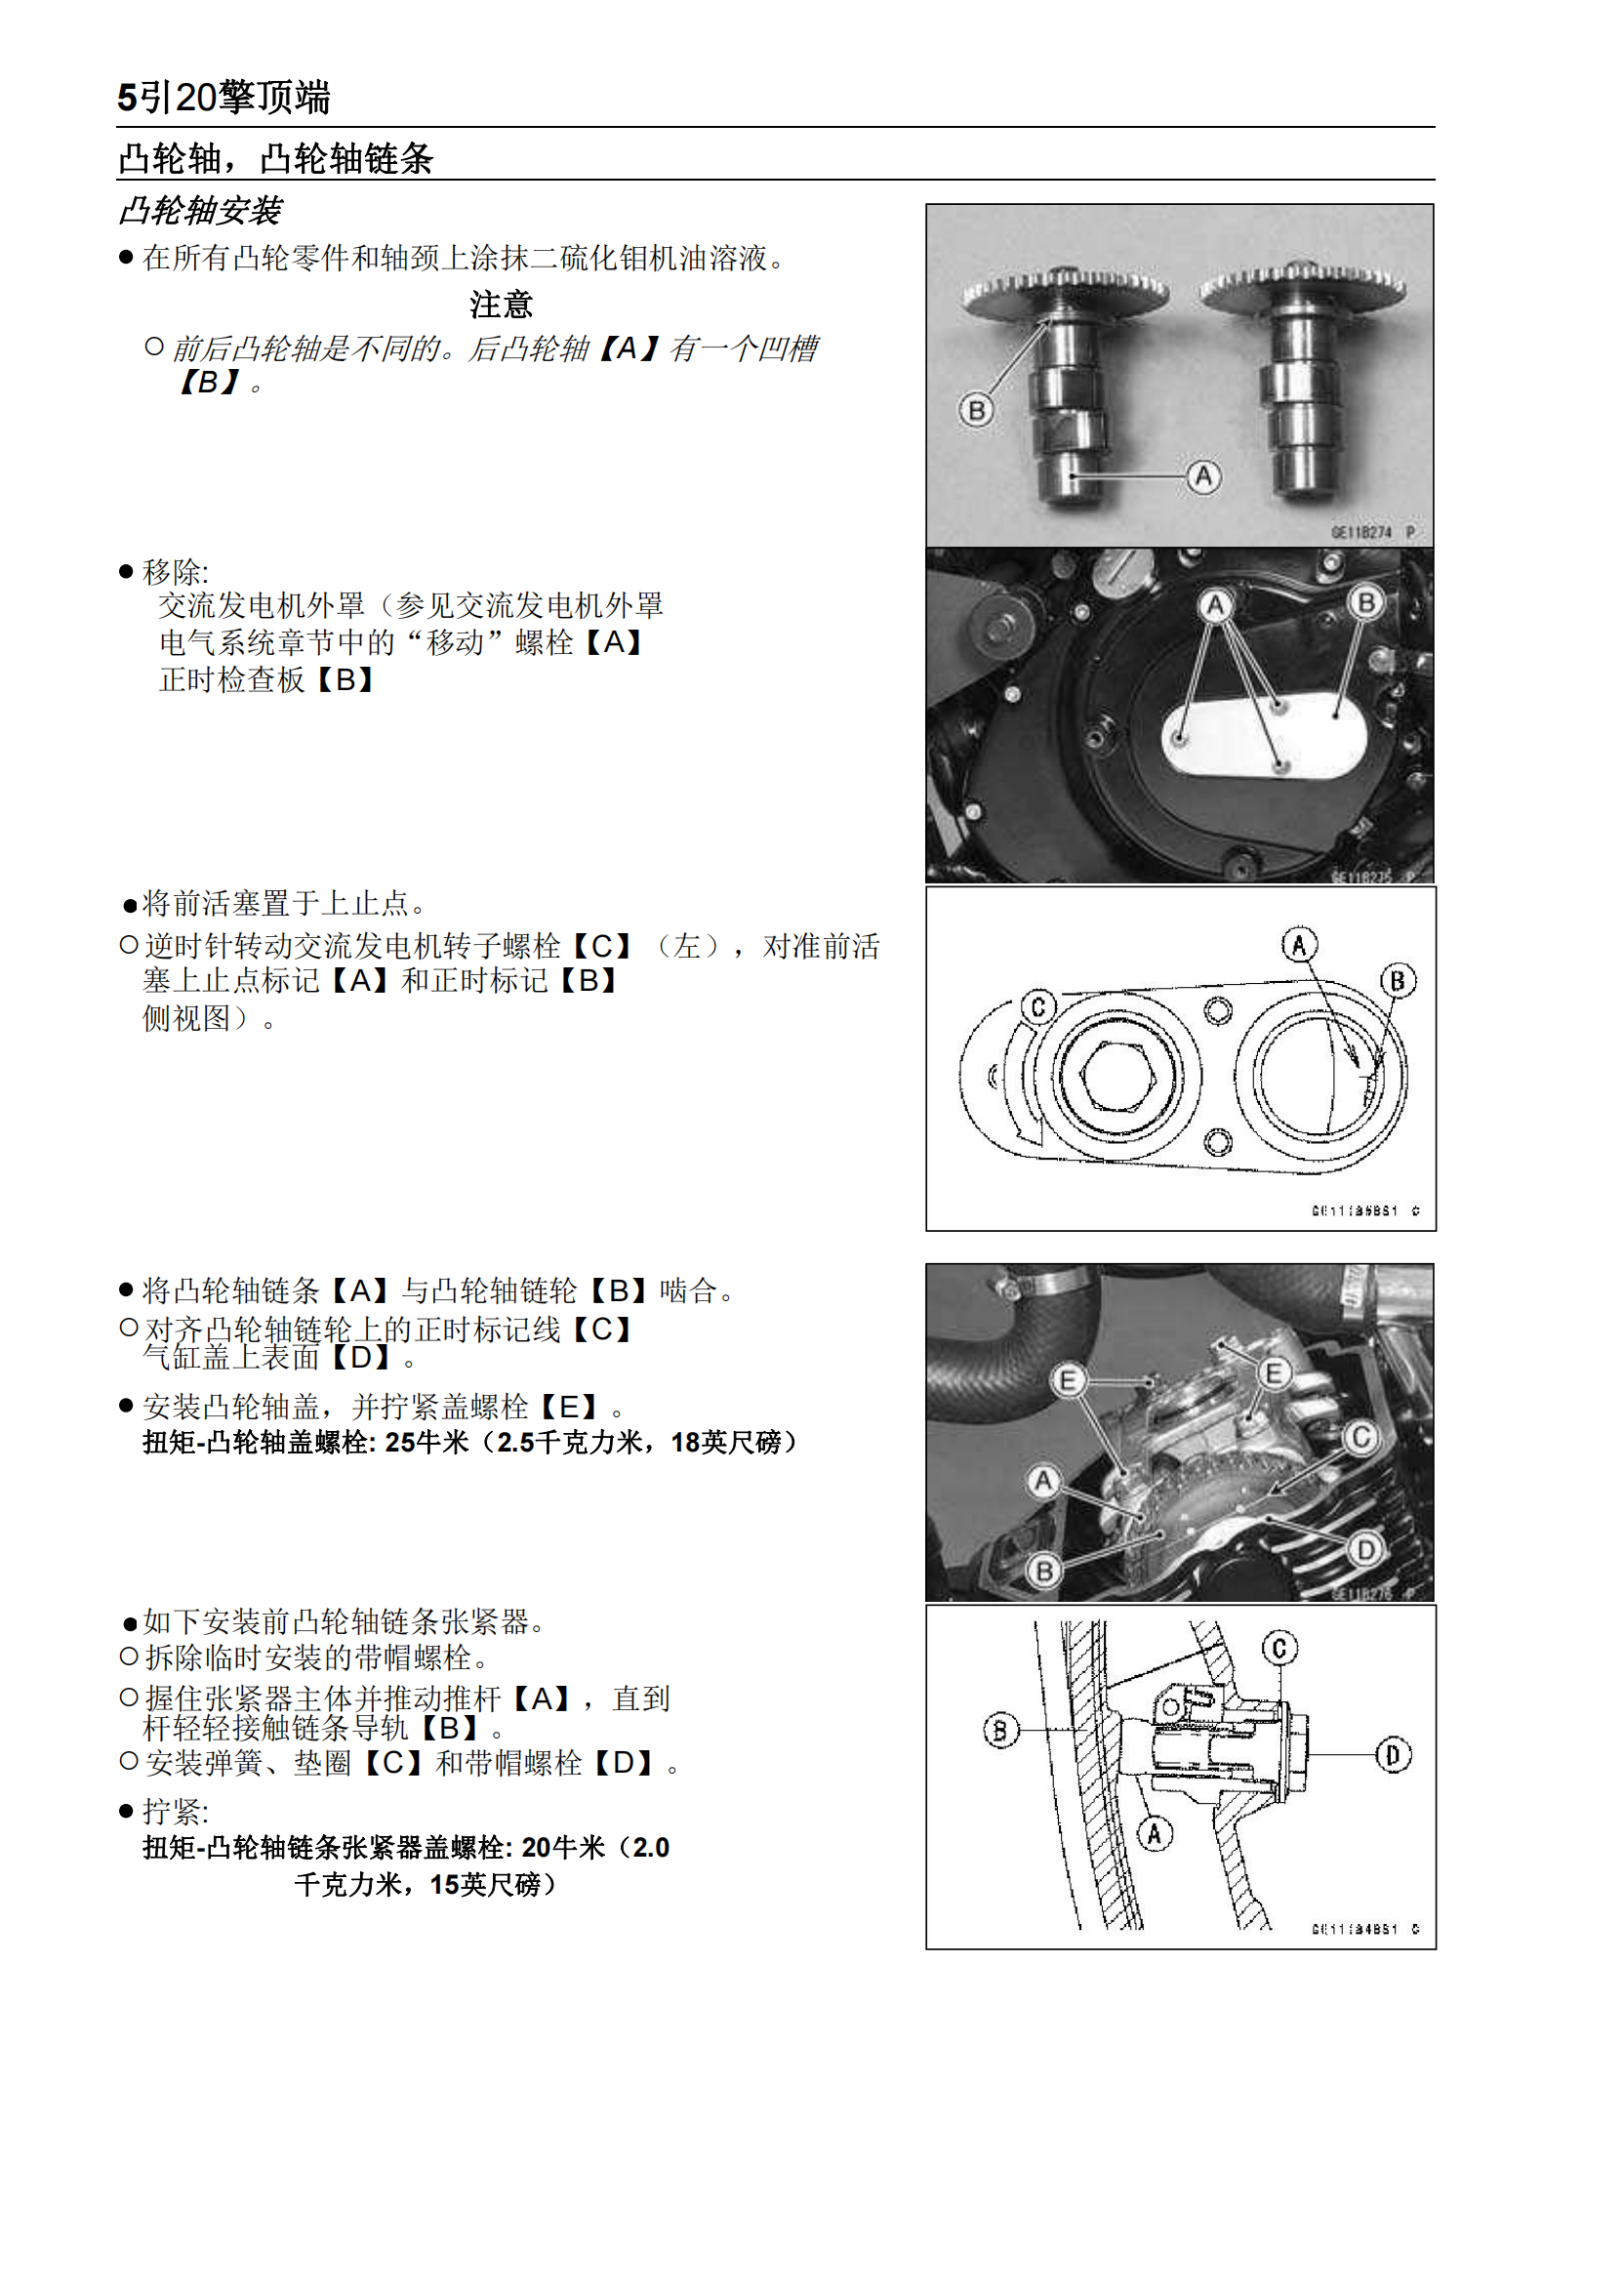 简体中文2007-2015年火神900 VULCAN 900 Custom vn900 维修手册插图4